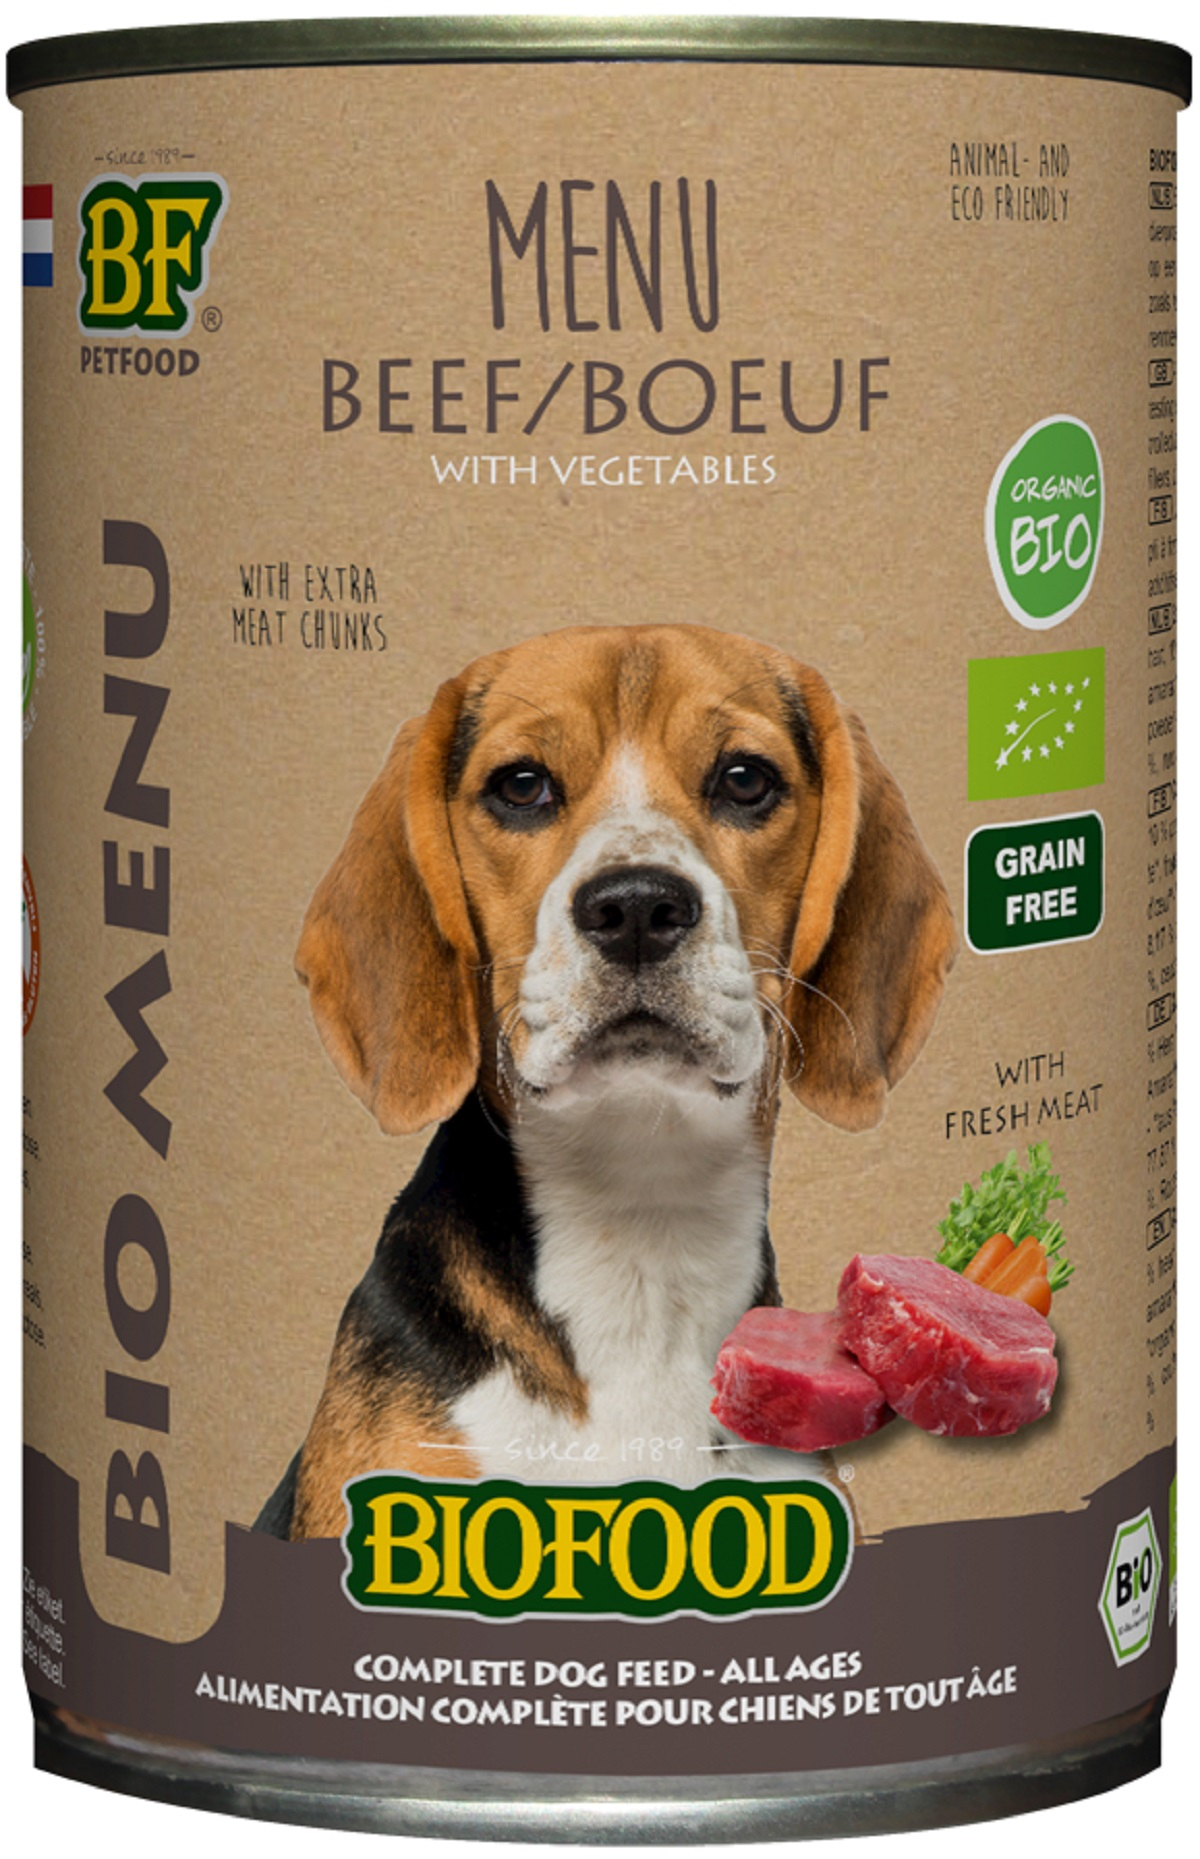 BF PETFOOD - BIOFOOD Menu BIO pâtée au bœuf pour chien